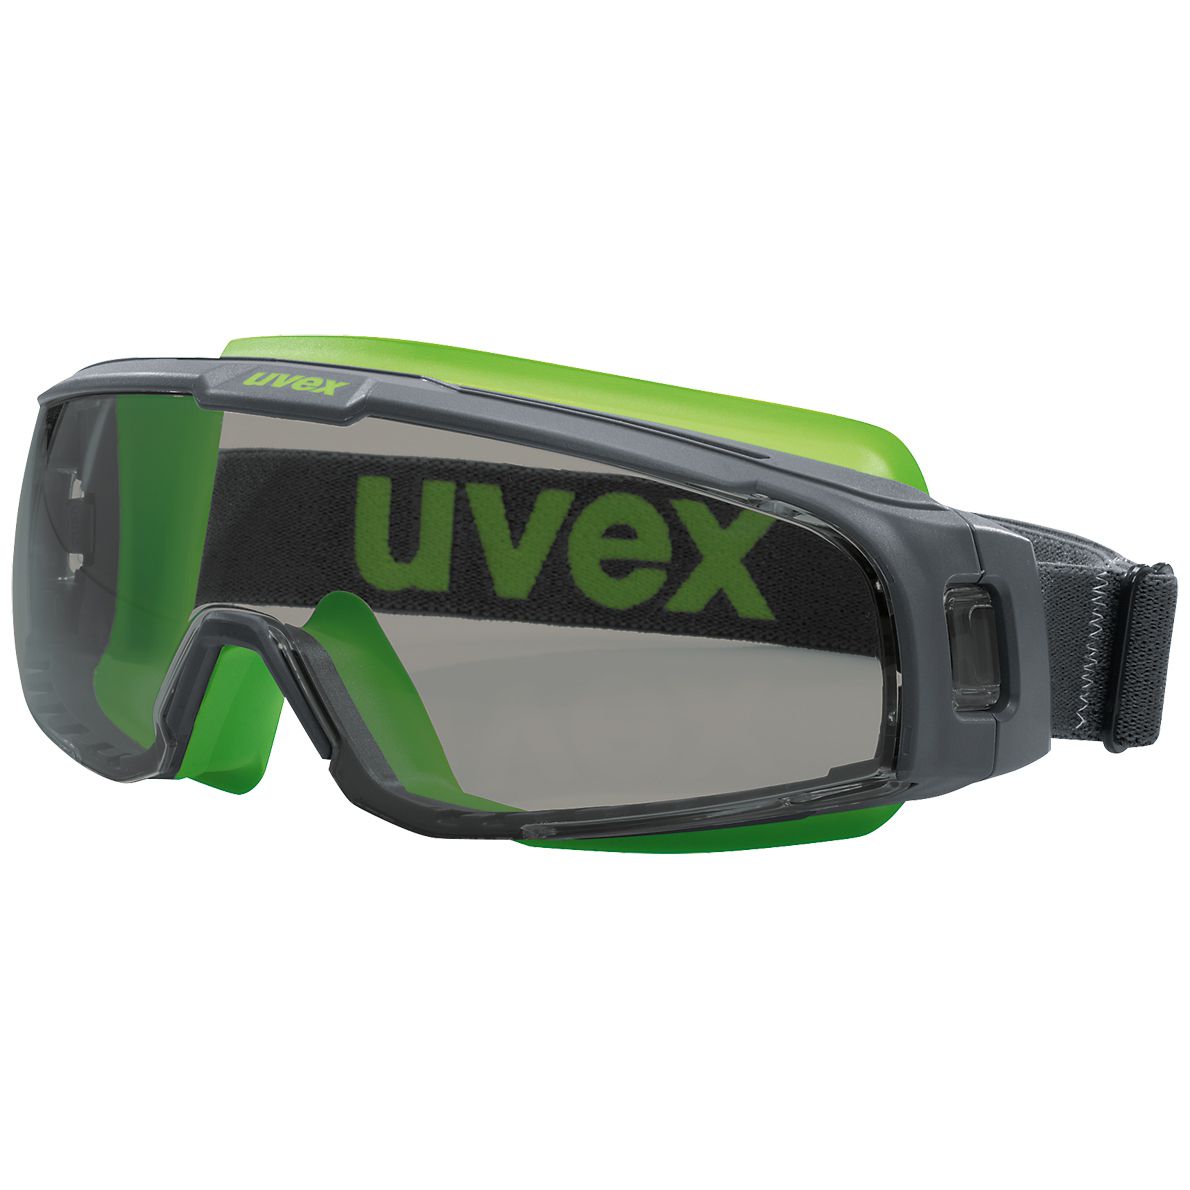 uvex u-sonic 9308 Schutzbrille - kratz- & beschlagfest dank supravision excellence - EN 166/172 - Grau-Grün/Getönt